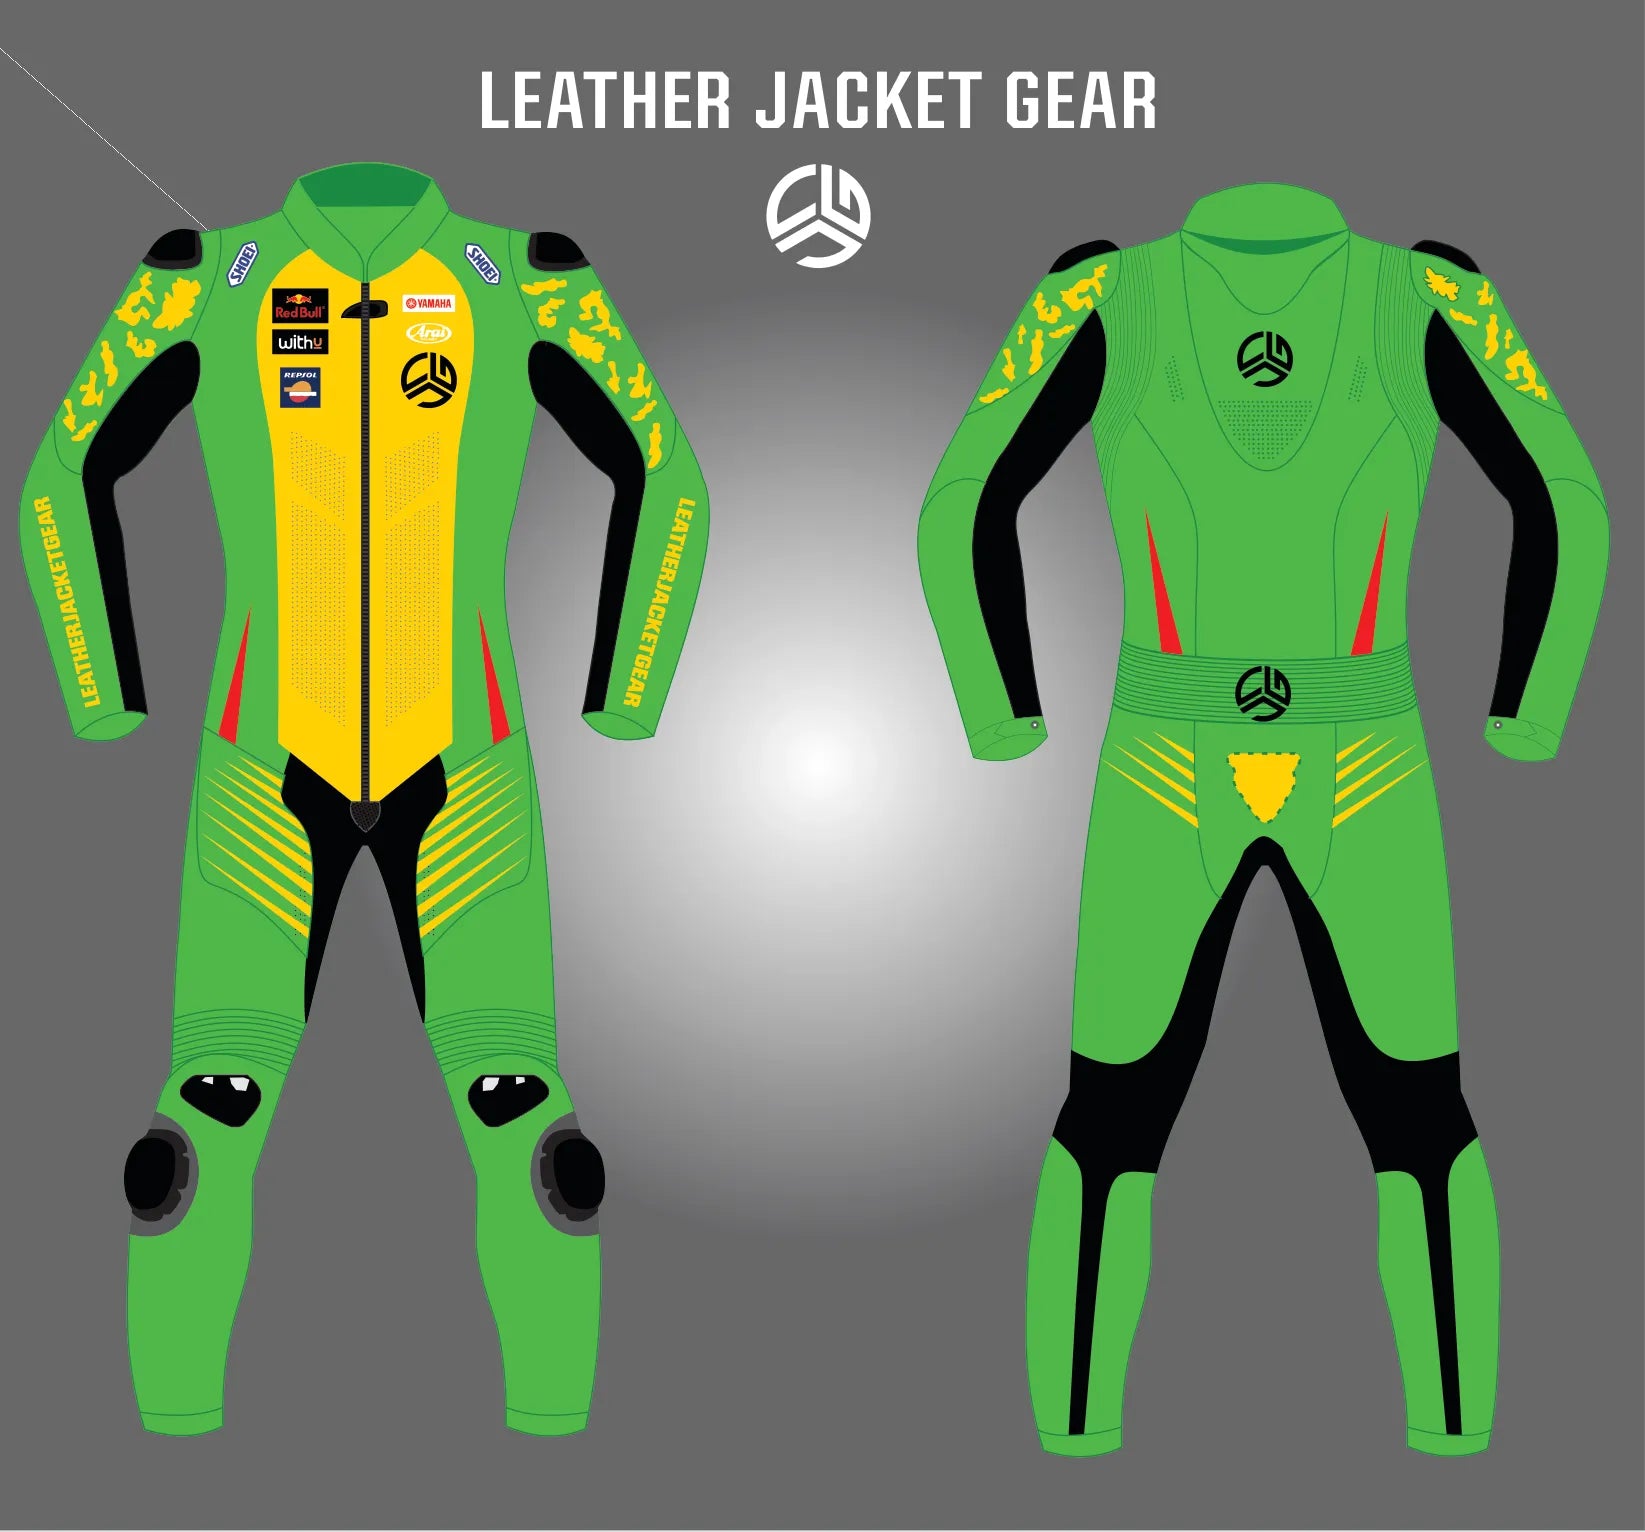 LeatherJacketGear-Green-Yellow-Black-Race-Suit